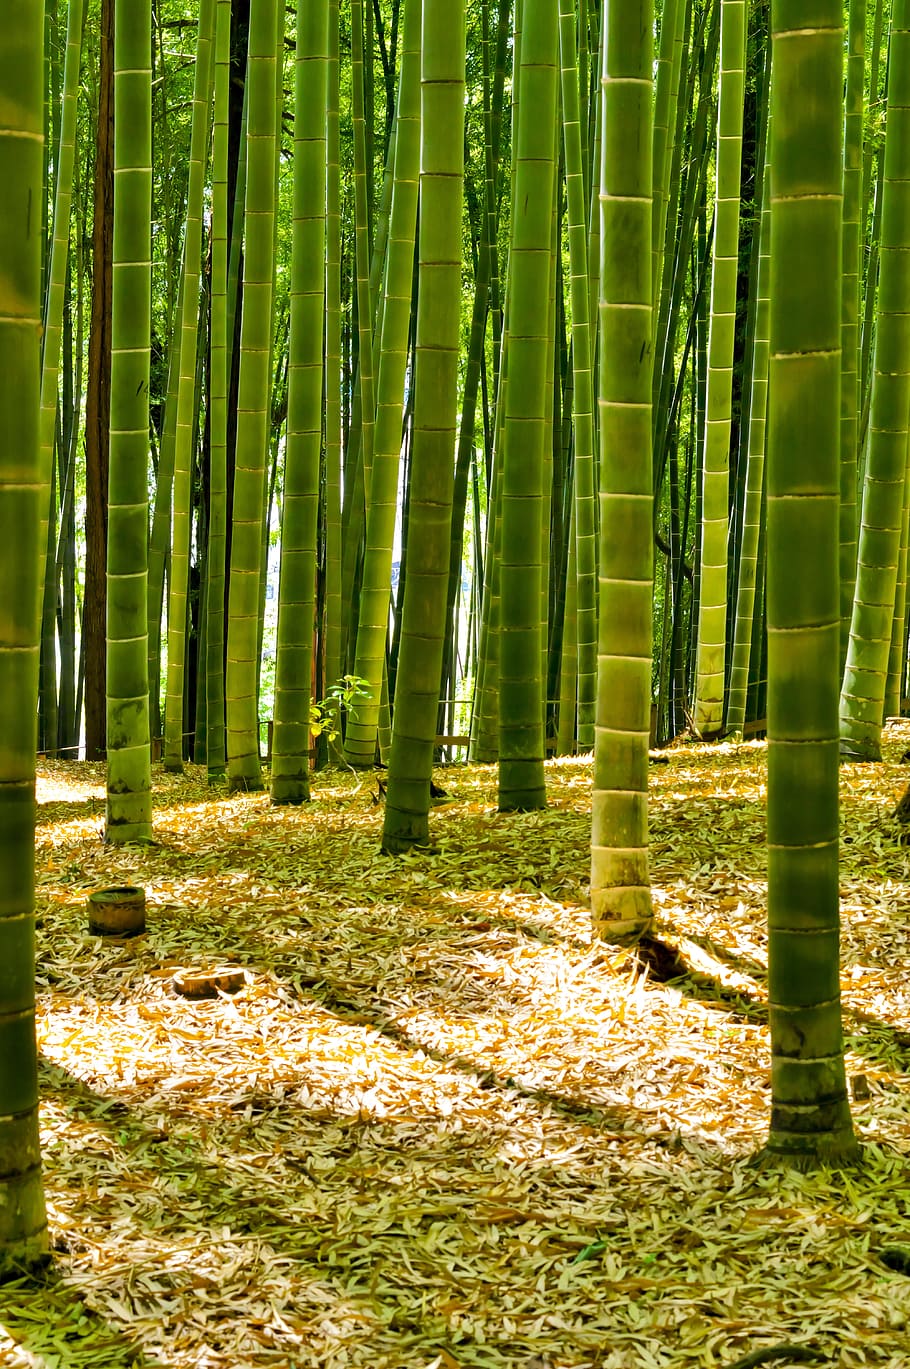 pohon bambu hijau, Jepang, Bambu, Hutan, hutan bambu, hijau, alami, lanskap, tanaman, bukit sayama